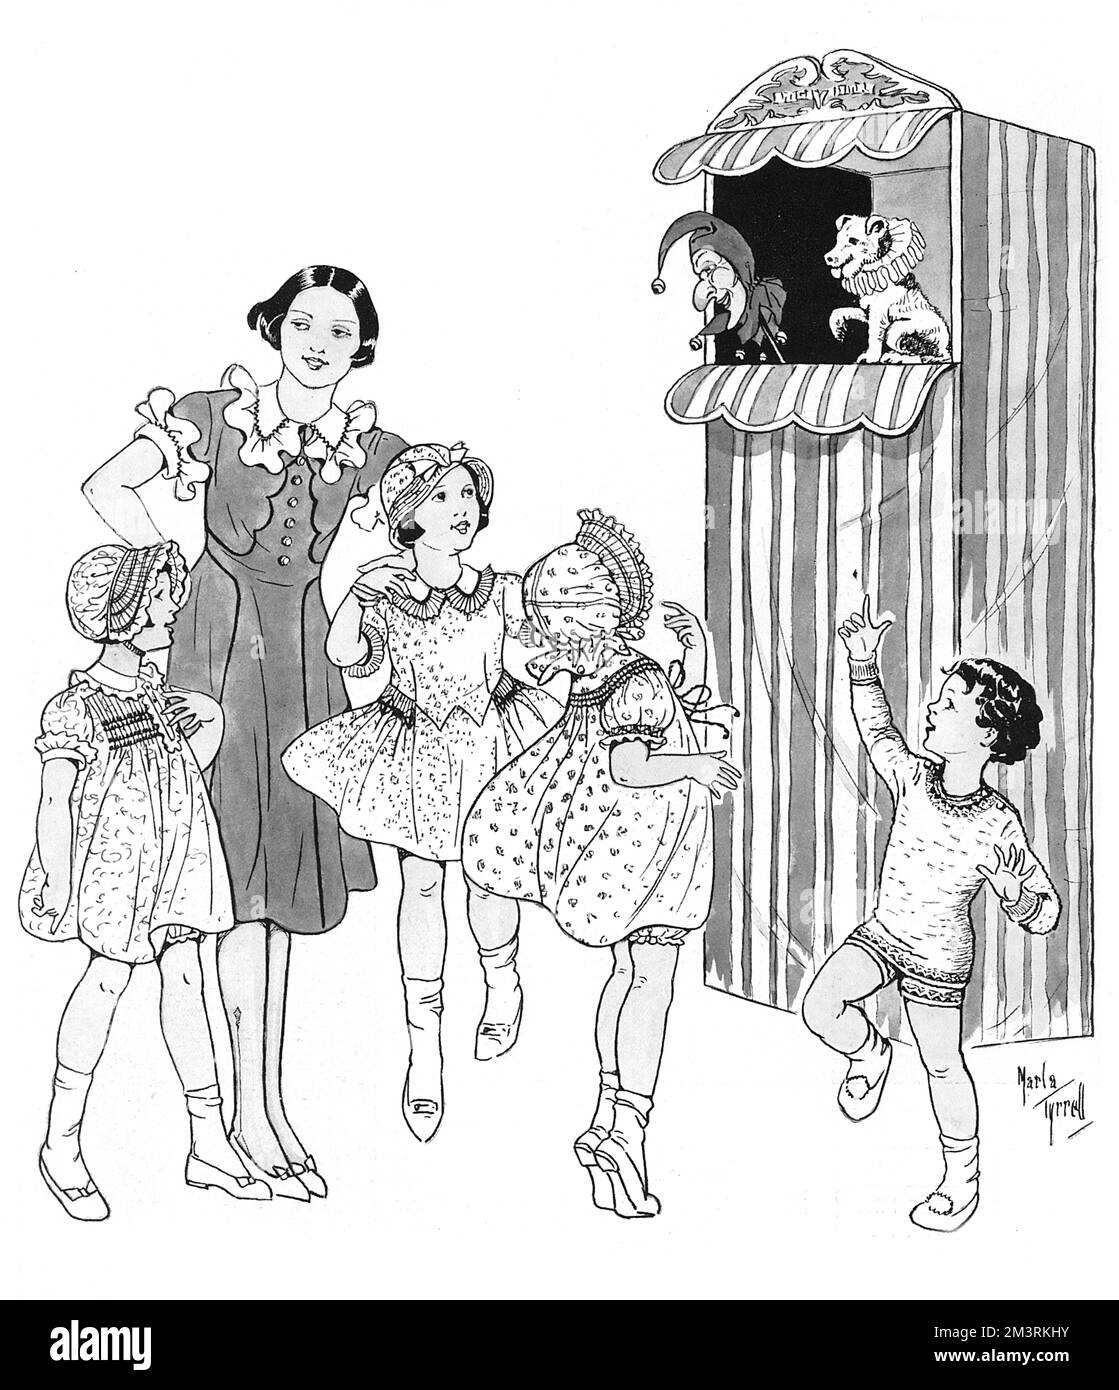 Kinder, die in Moden aus Liberty gekleidet sind, sehen sich mit Spannung eine Punch and Judy Show an. Datum: 1933 Stockfoto